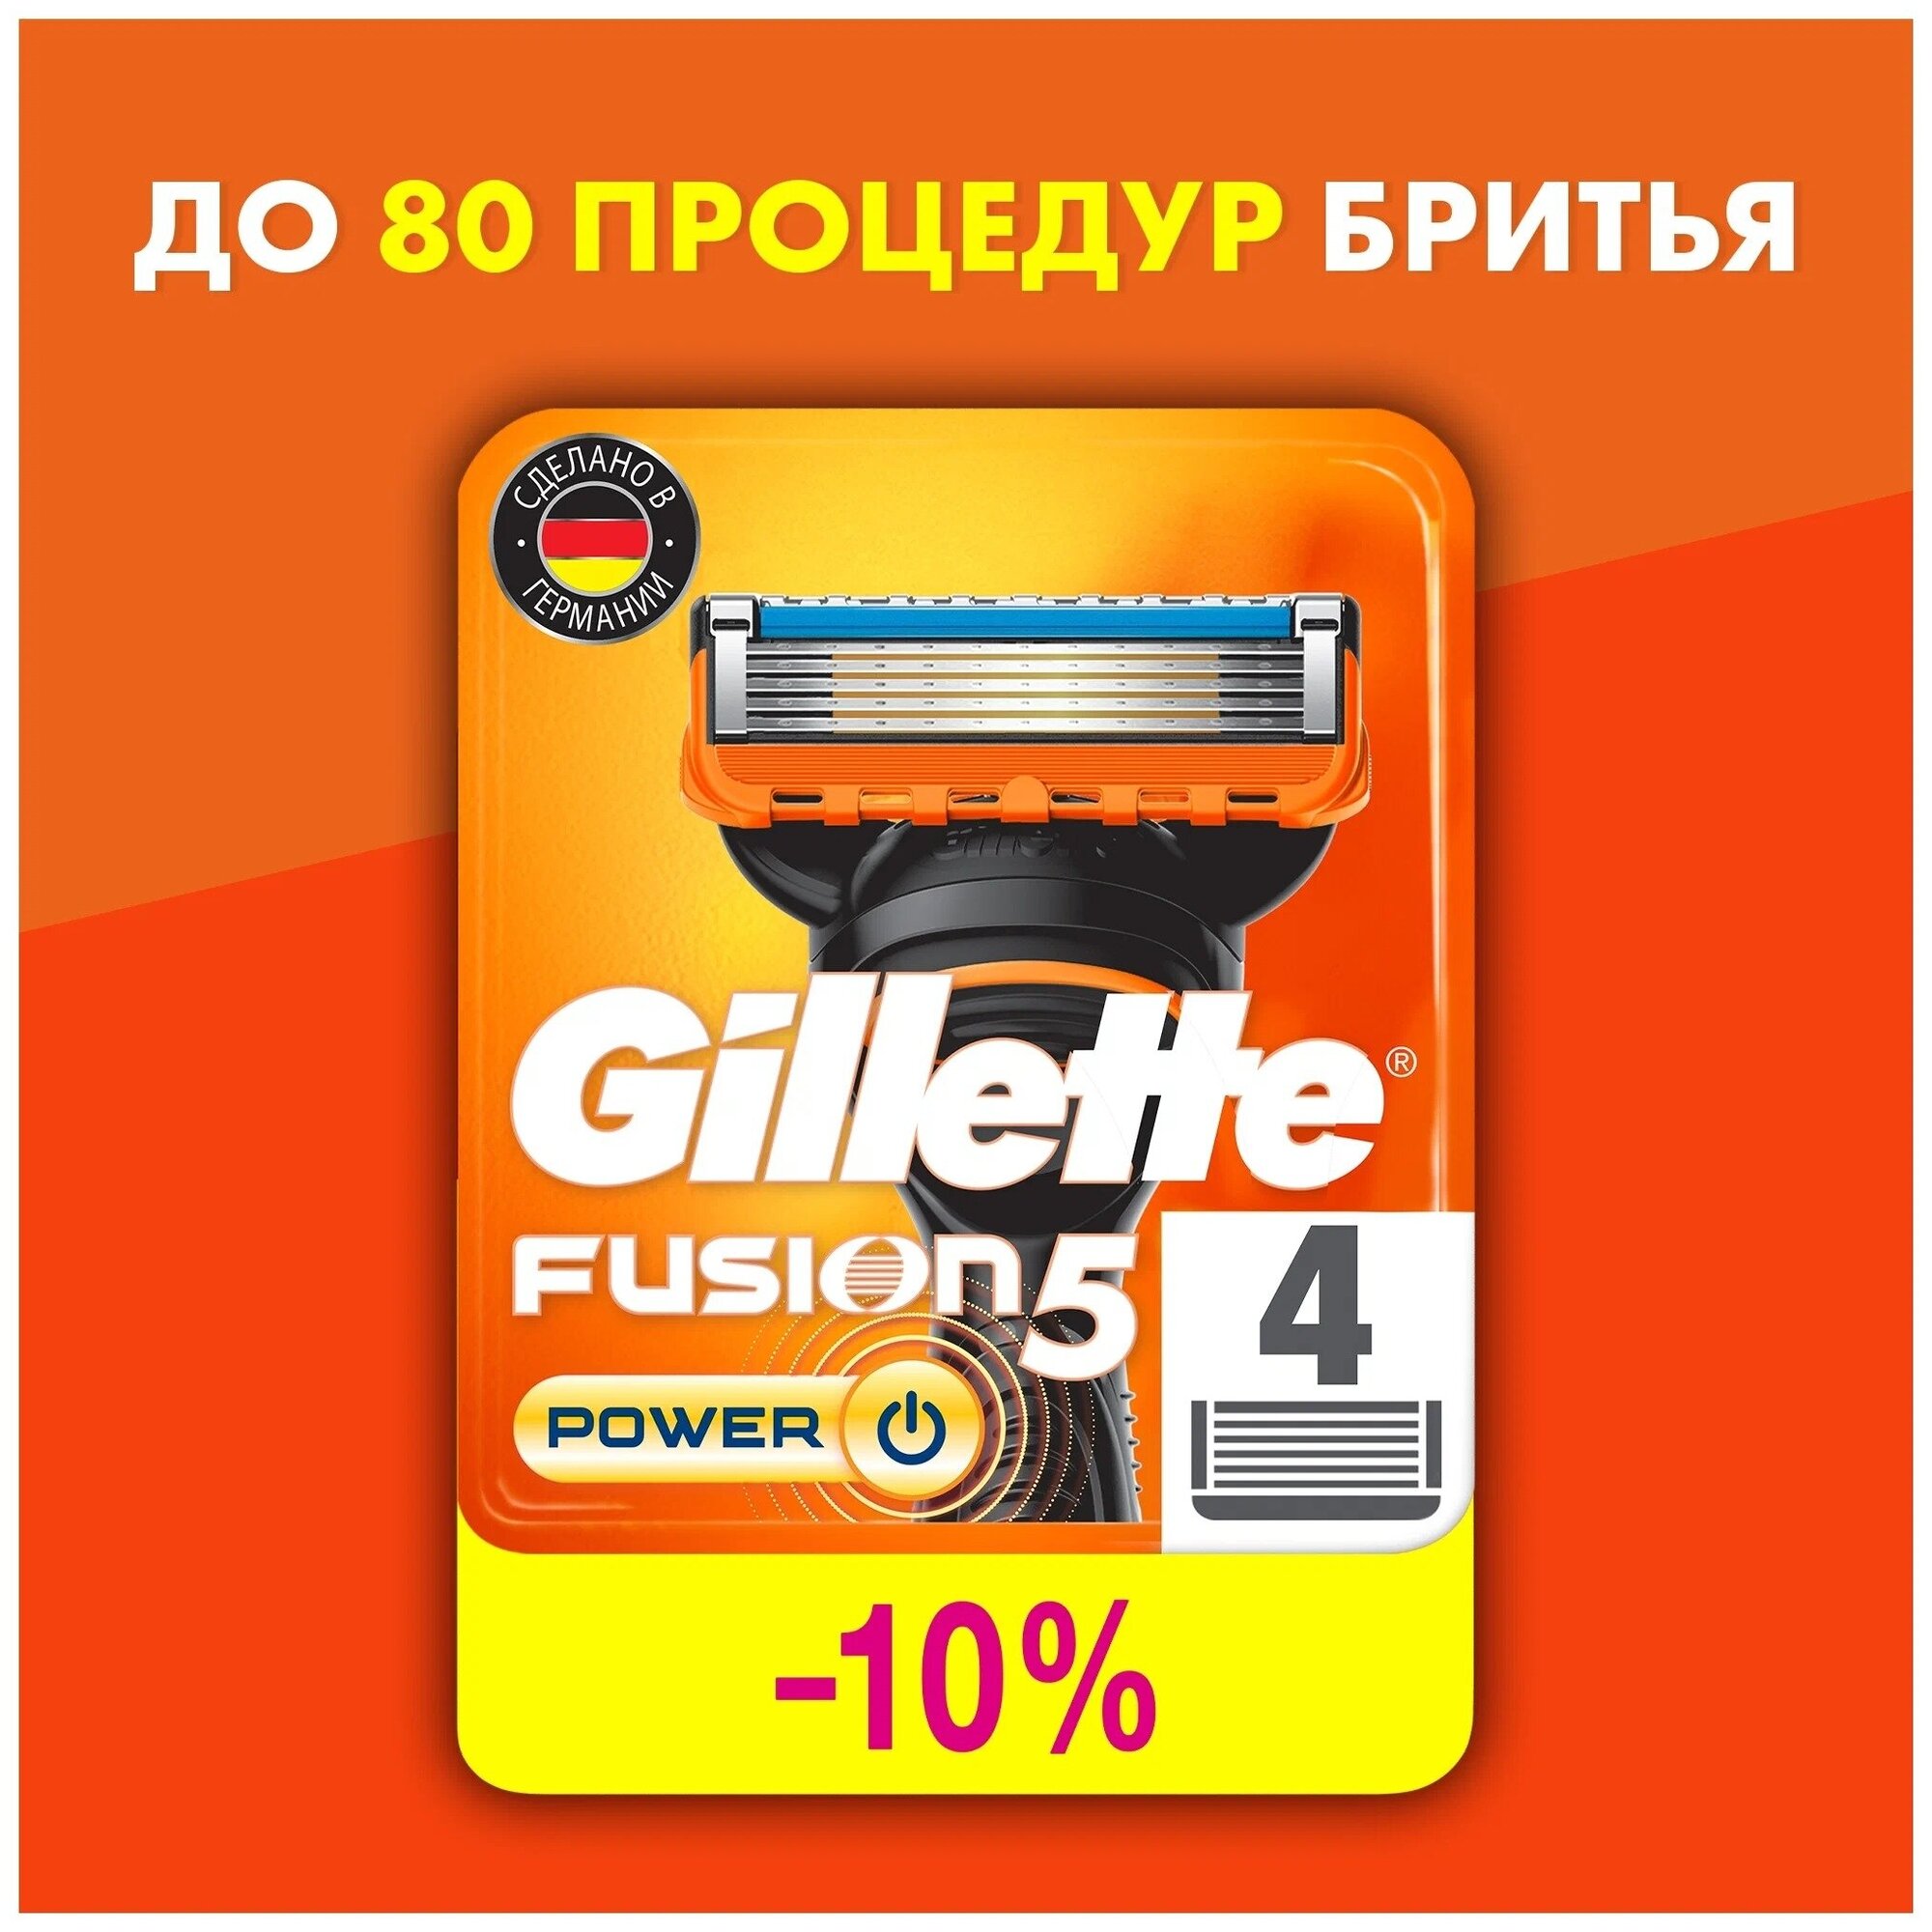 Сменные Кассеты Gillette Fusion5 Для Мужской Бритвы, 4 шт, с 5 лезвиями, c точным триммером для труднодоступных мест